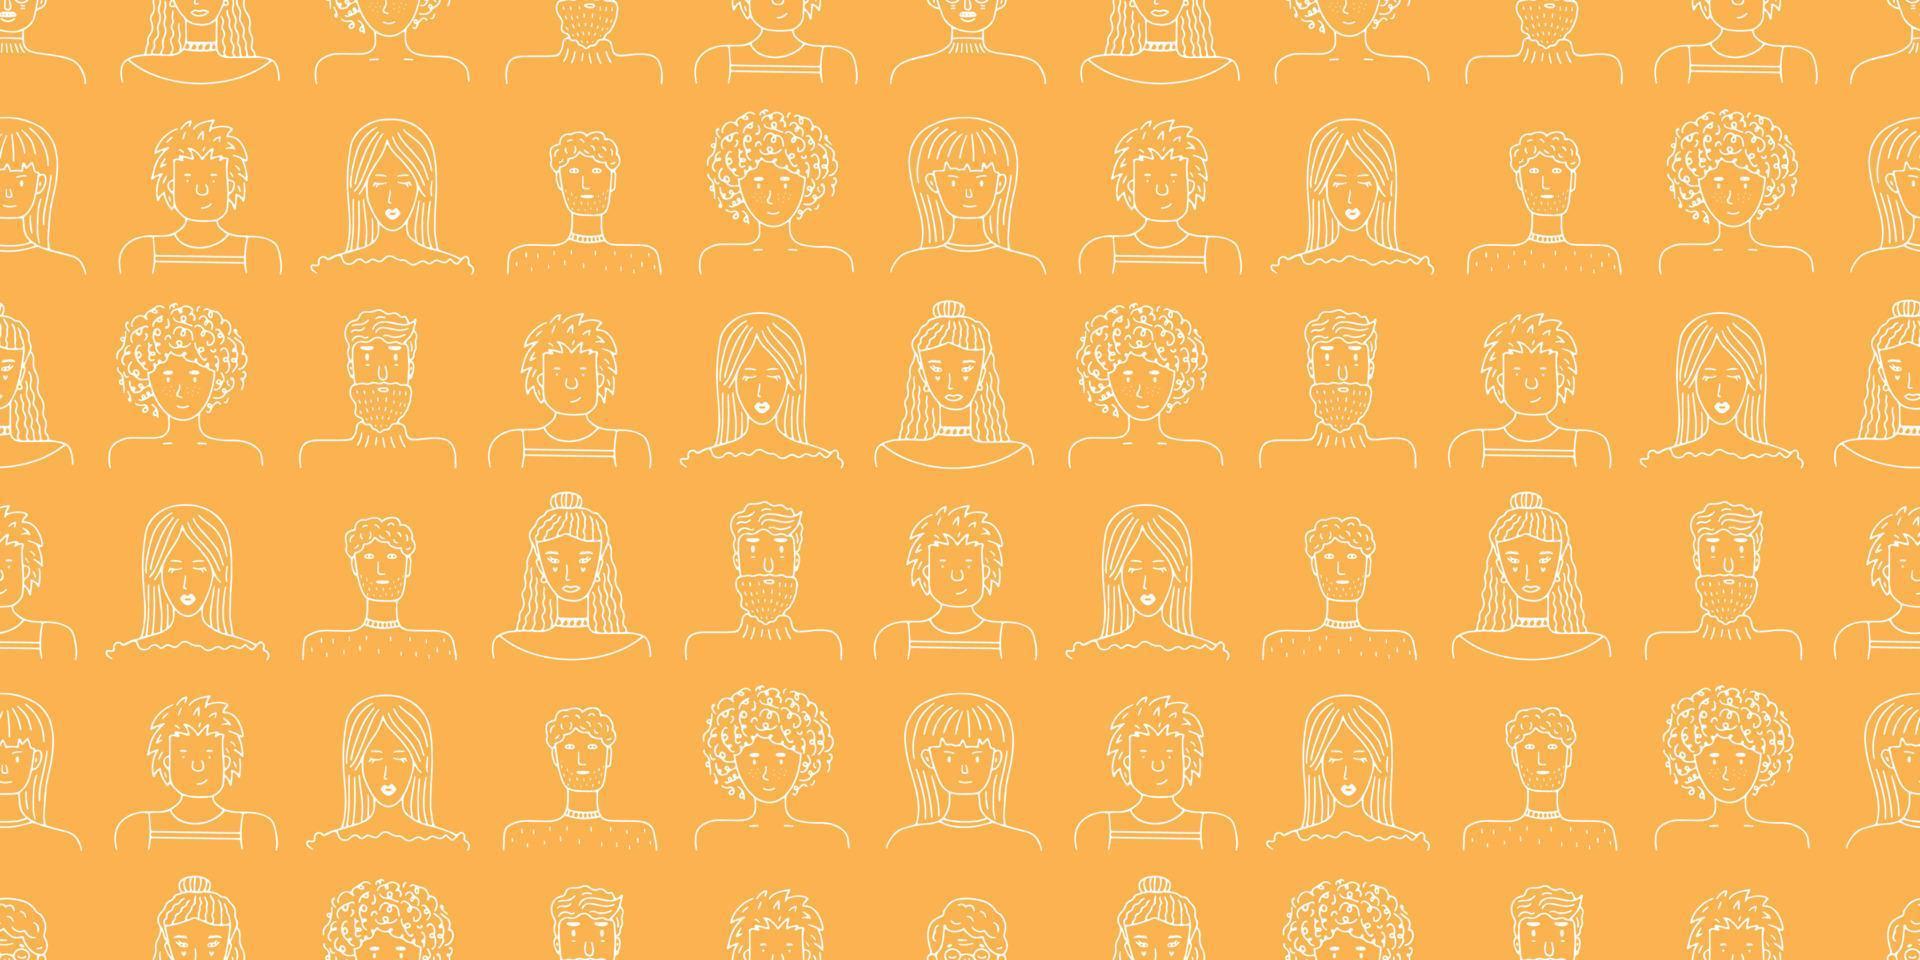 nahtloses muster von personenporträts für banner, soziale medien, website, textilien, geschenkpapier. Doodle-Porträts modische Mädchen und Jungs. trendiges handgezeichnetes Gesicht. Hintergrund, Vektorillustration vektor